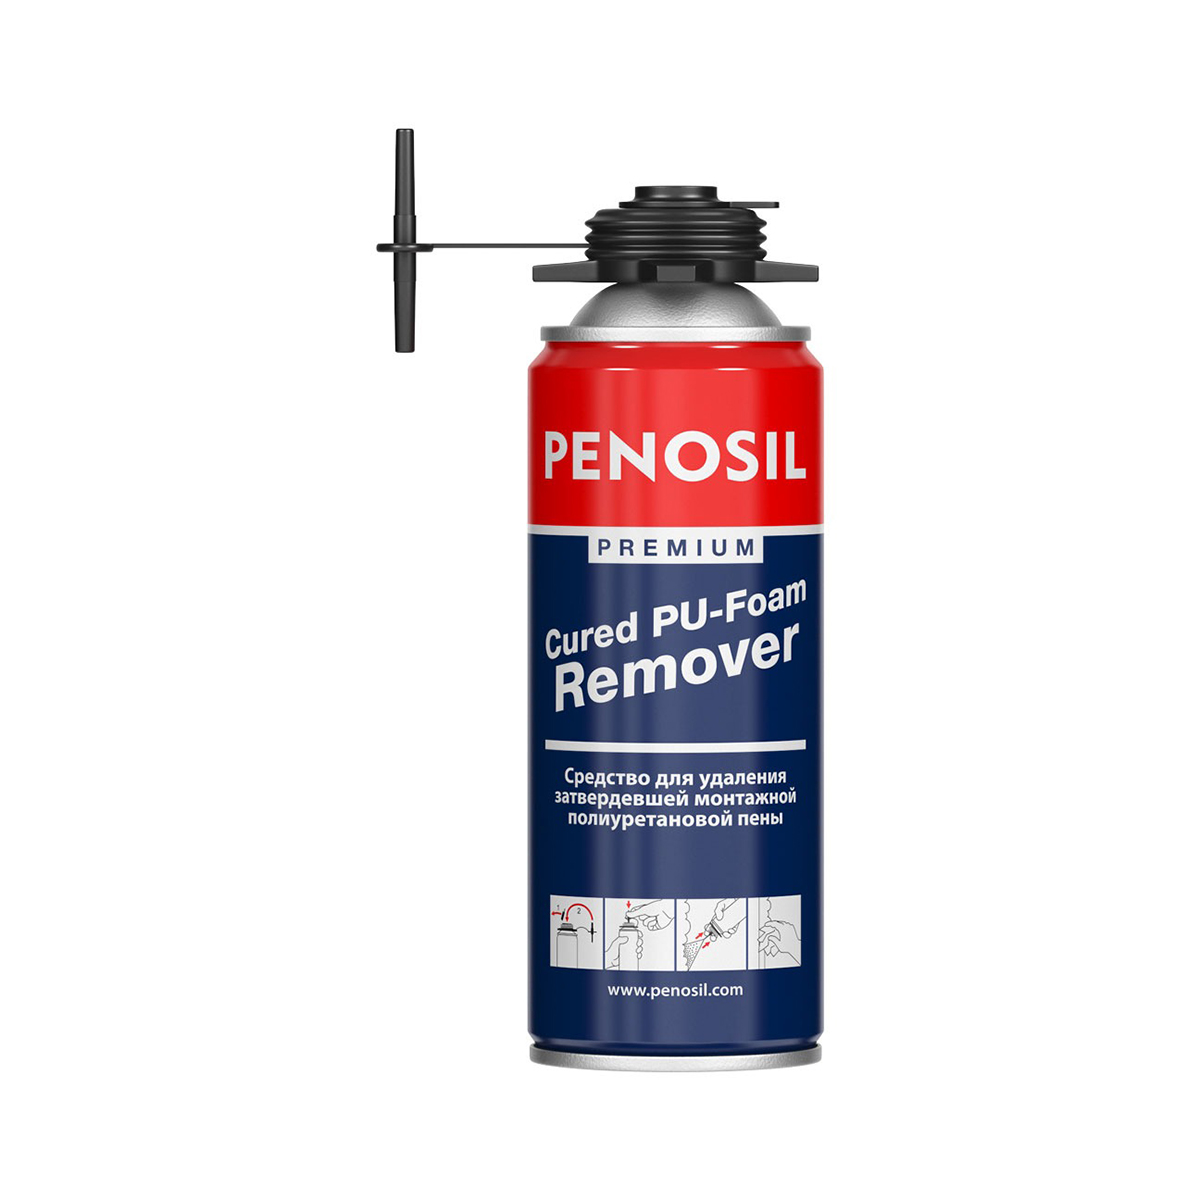 Очиститель застывшей монтажной пены Penosil Premium Cured PU-Foam Remover, 340 мл удалитель застывшей монтажной пены bitumast